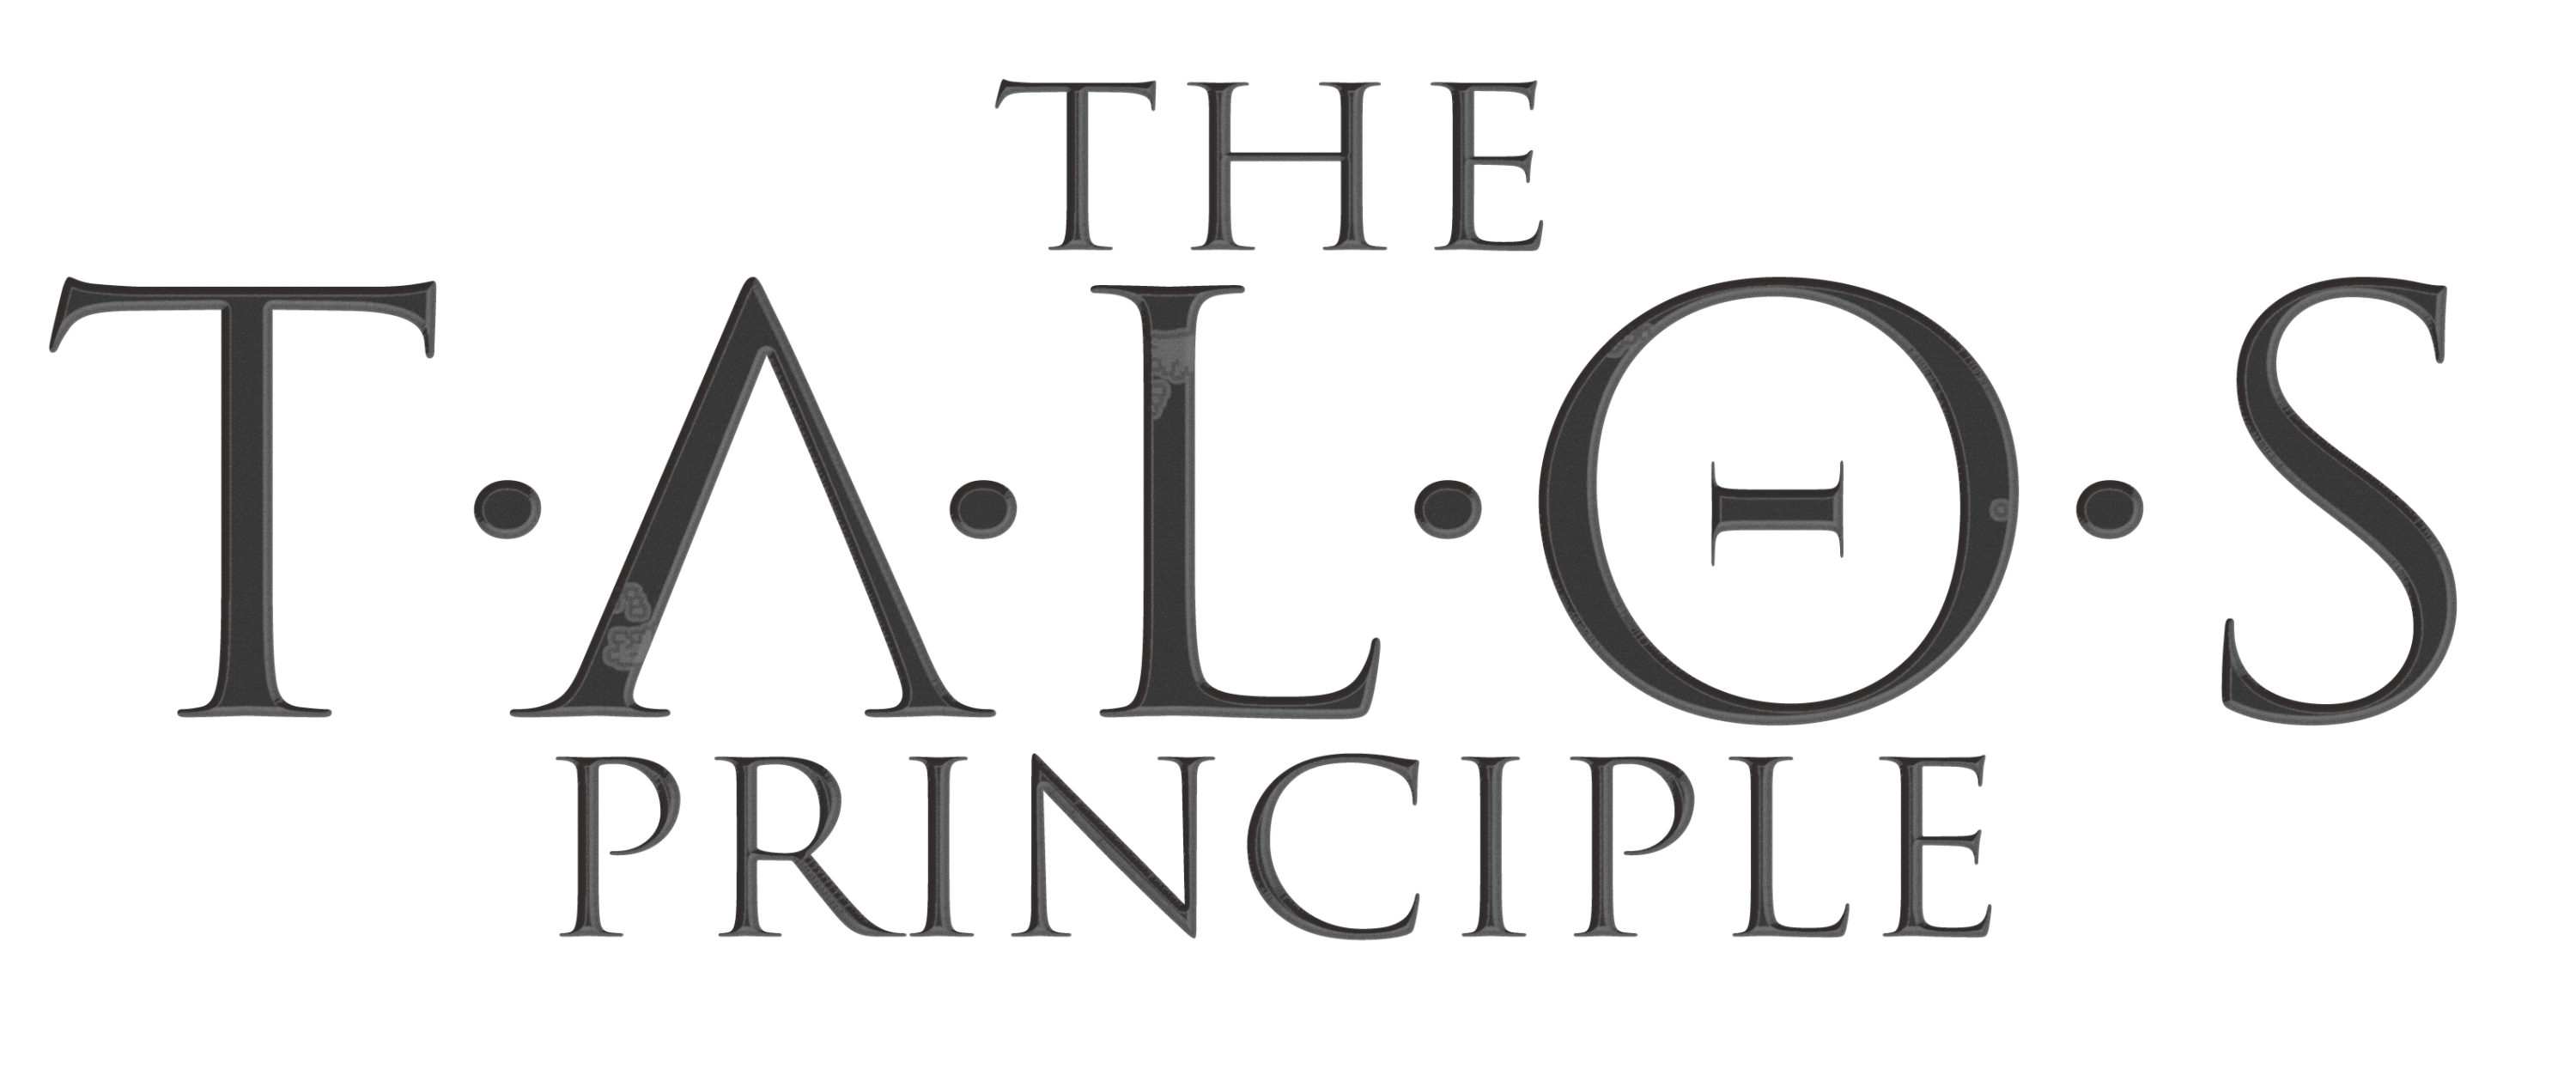 Talos Principle Logo